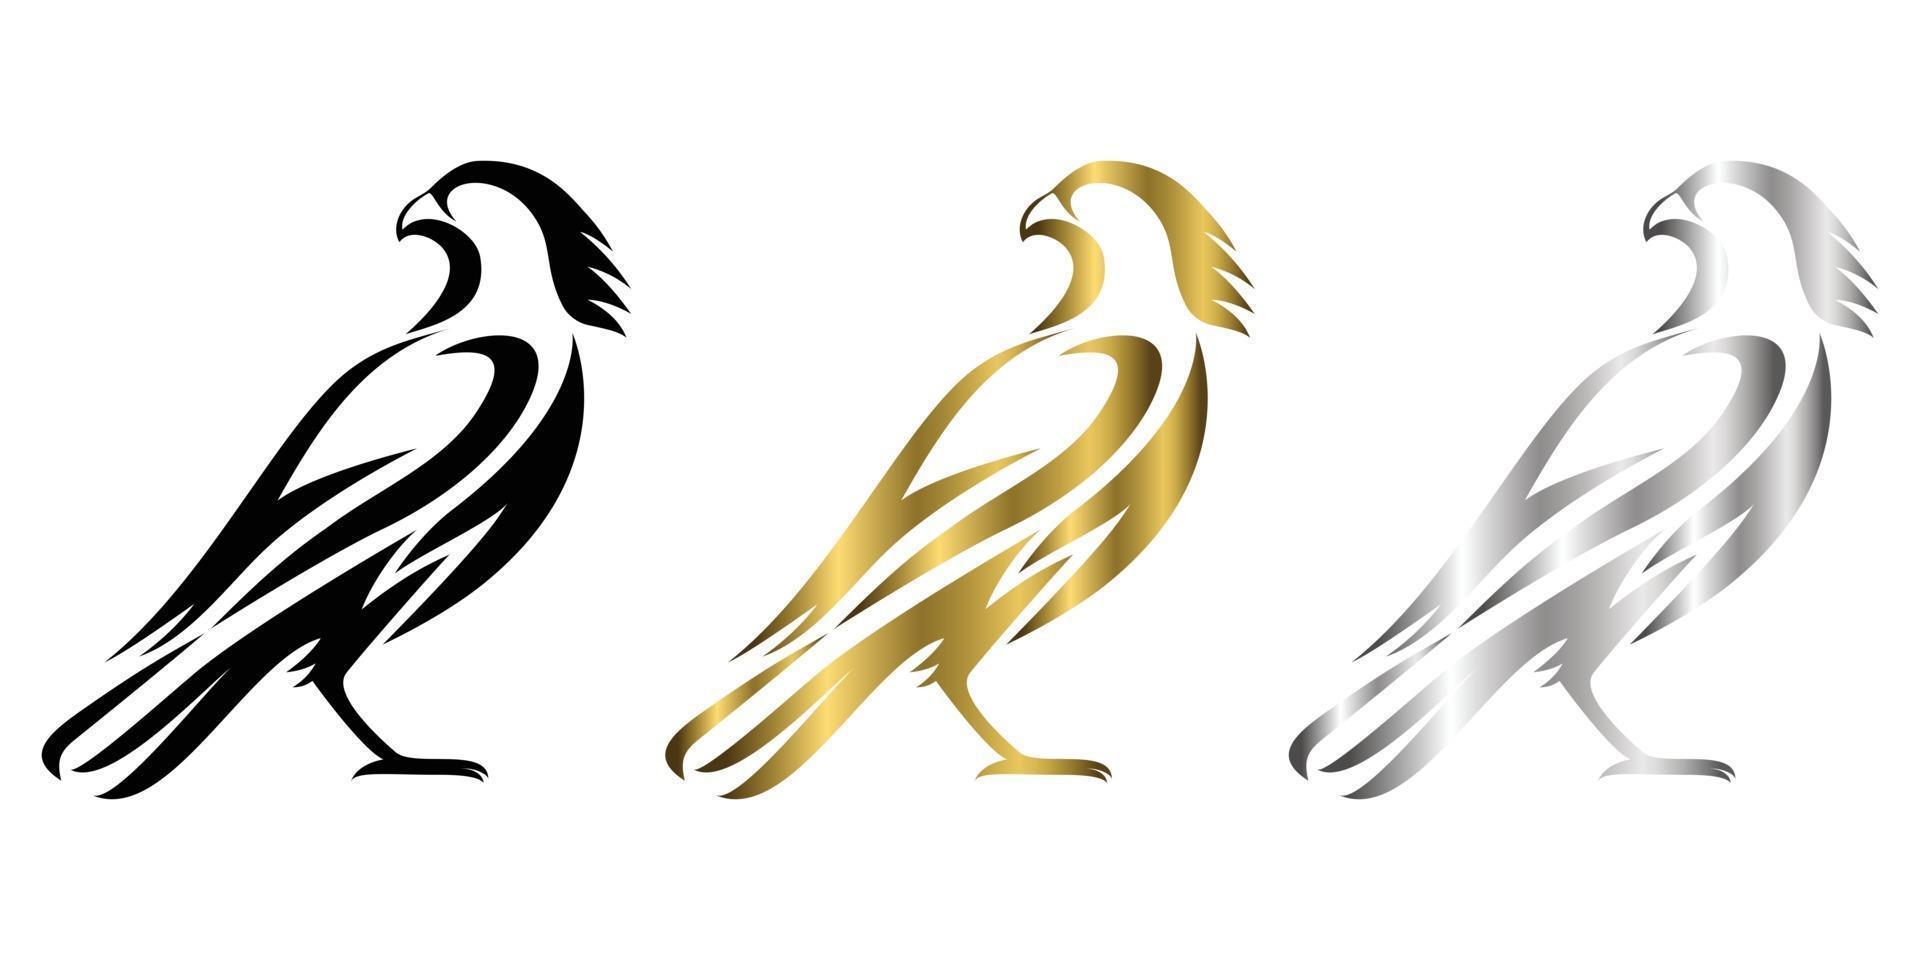 tre colori nero oro argento line art illustrazione vettoriale su sfondo bianco di un falco adatto per fare logo